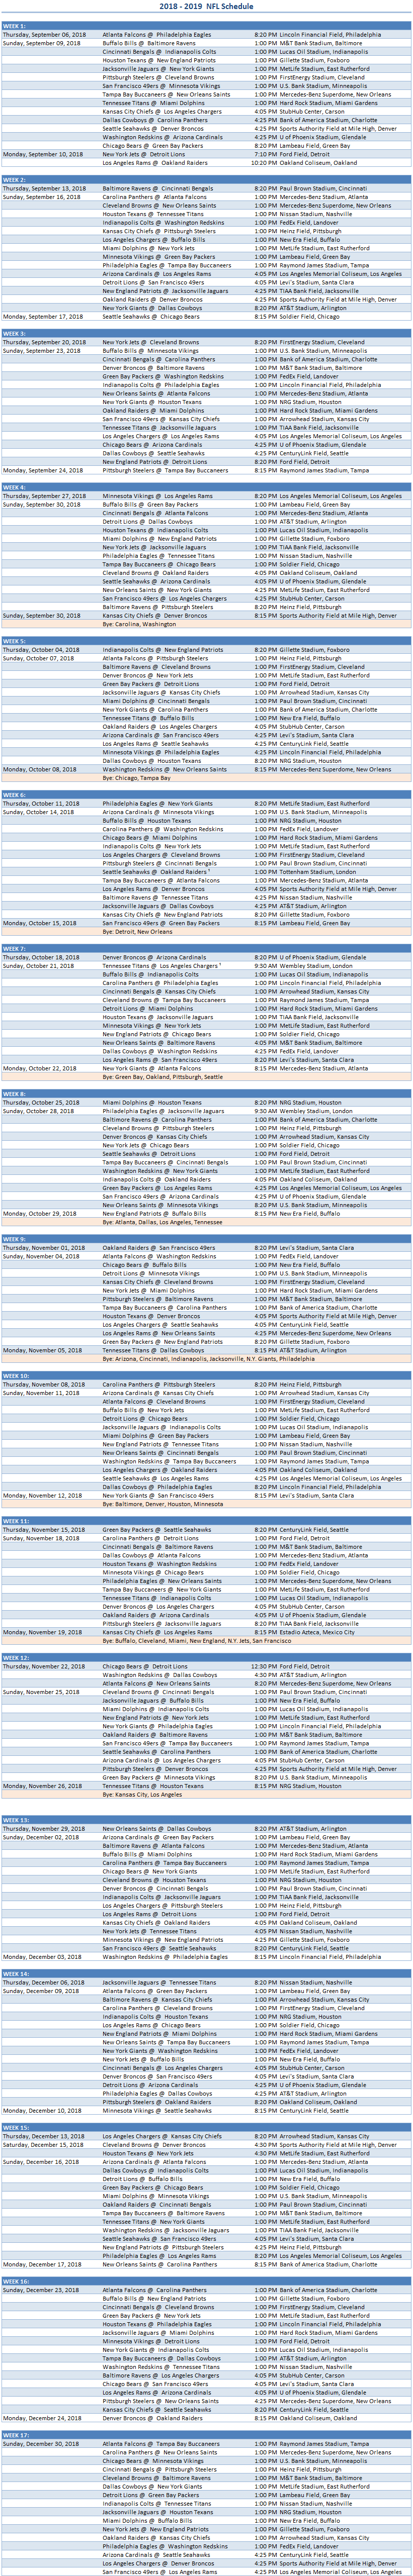 2018 Excel Spreadsheet Of Nfl Schedule In Nfl 2018 Schedule